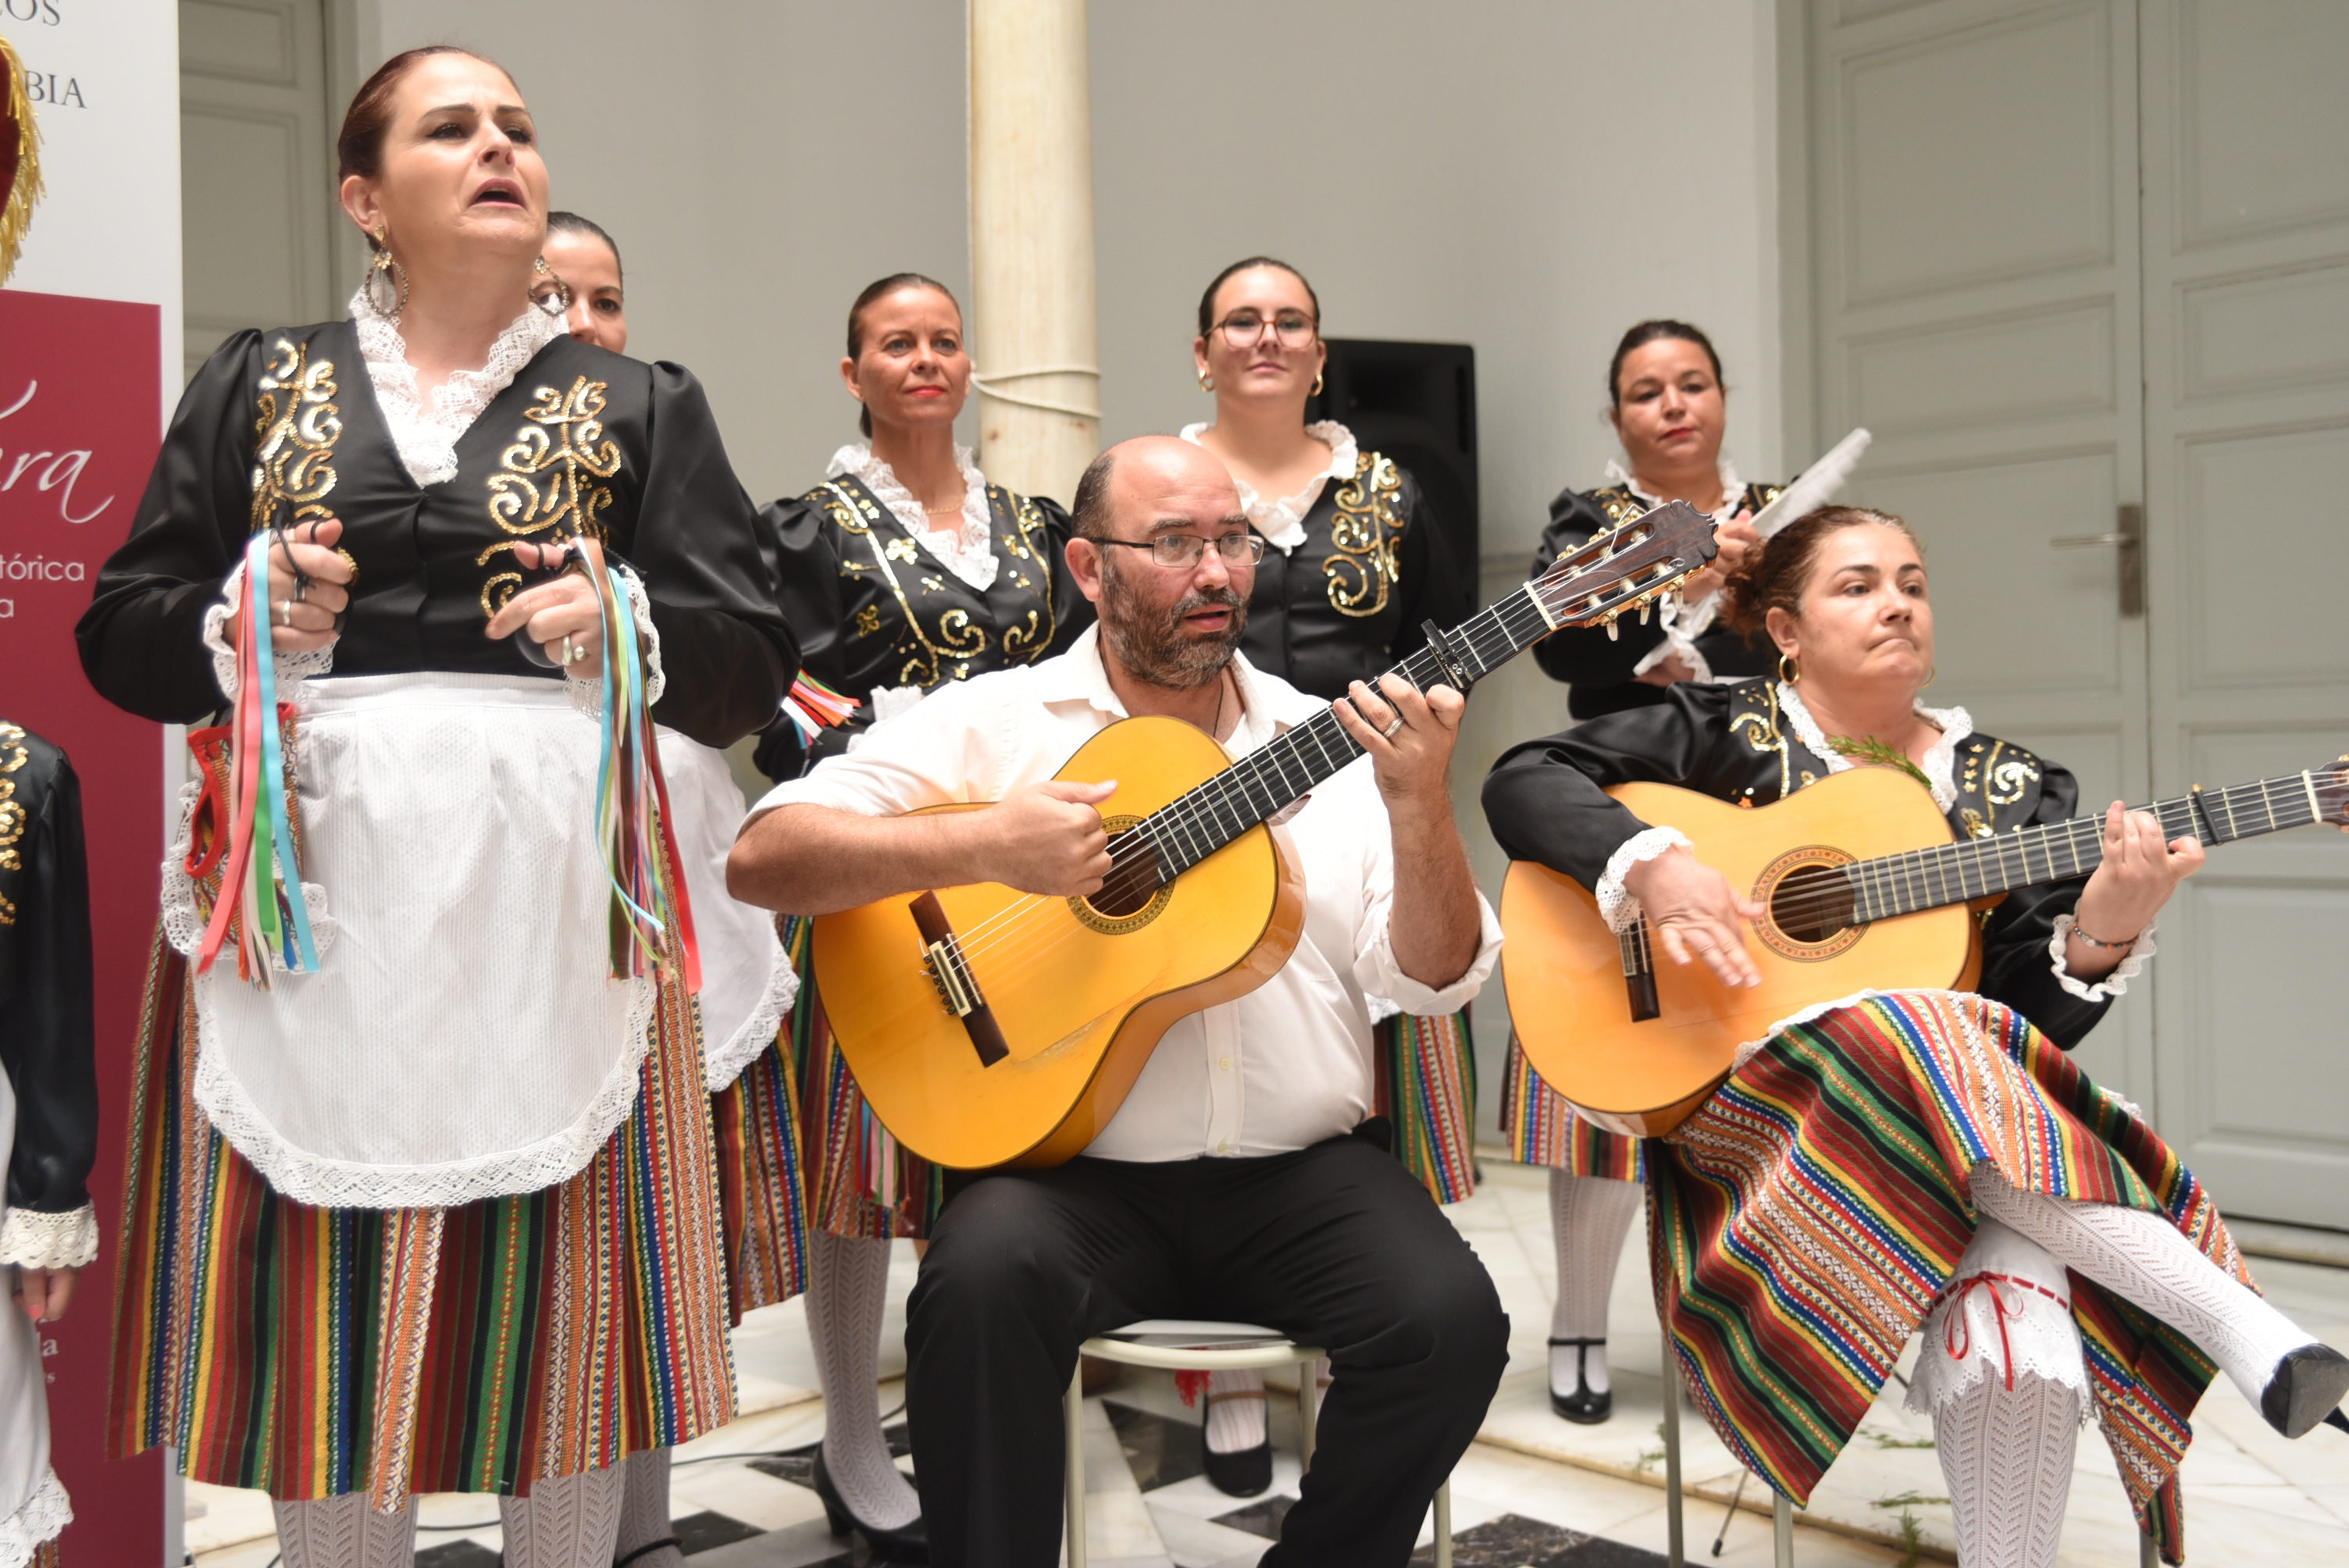 Patrimonio, identidad y cultura se unen en la XXXIX edición del Festival de Música Tradicional de la Alpujarra